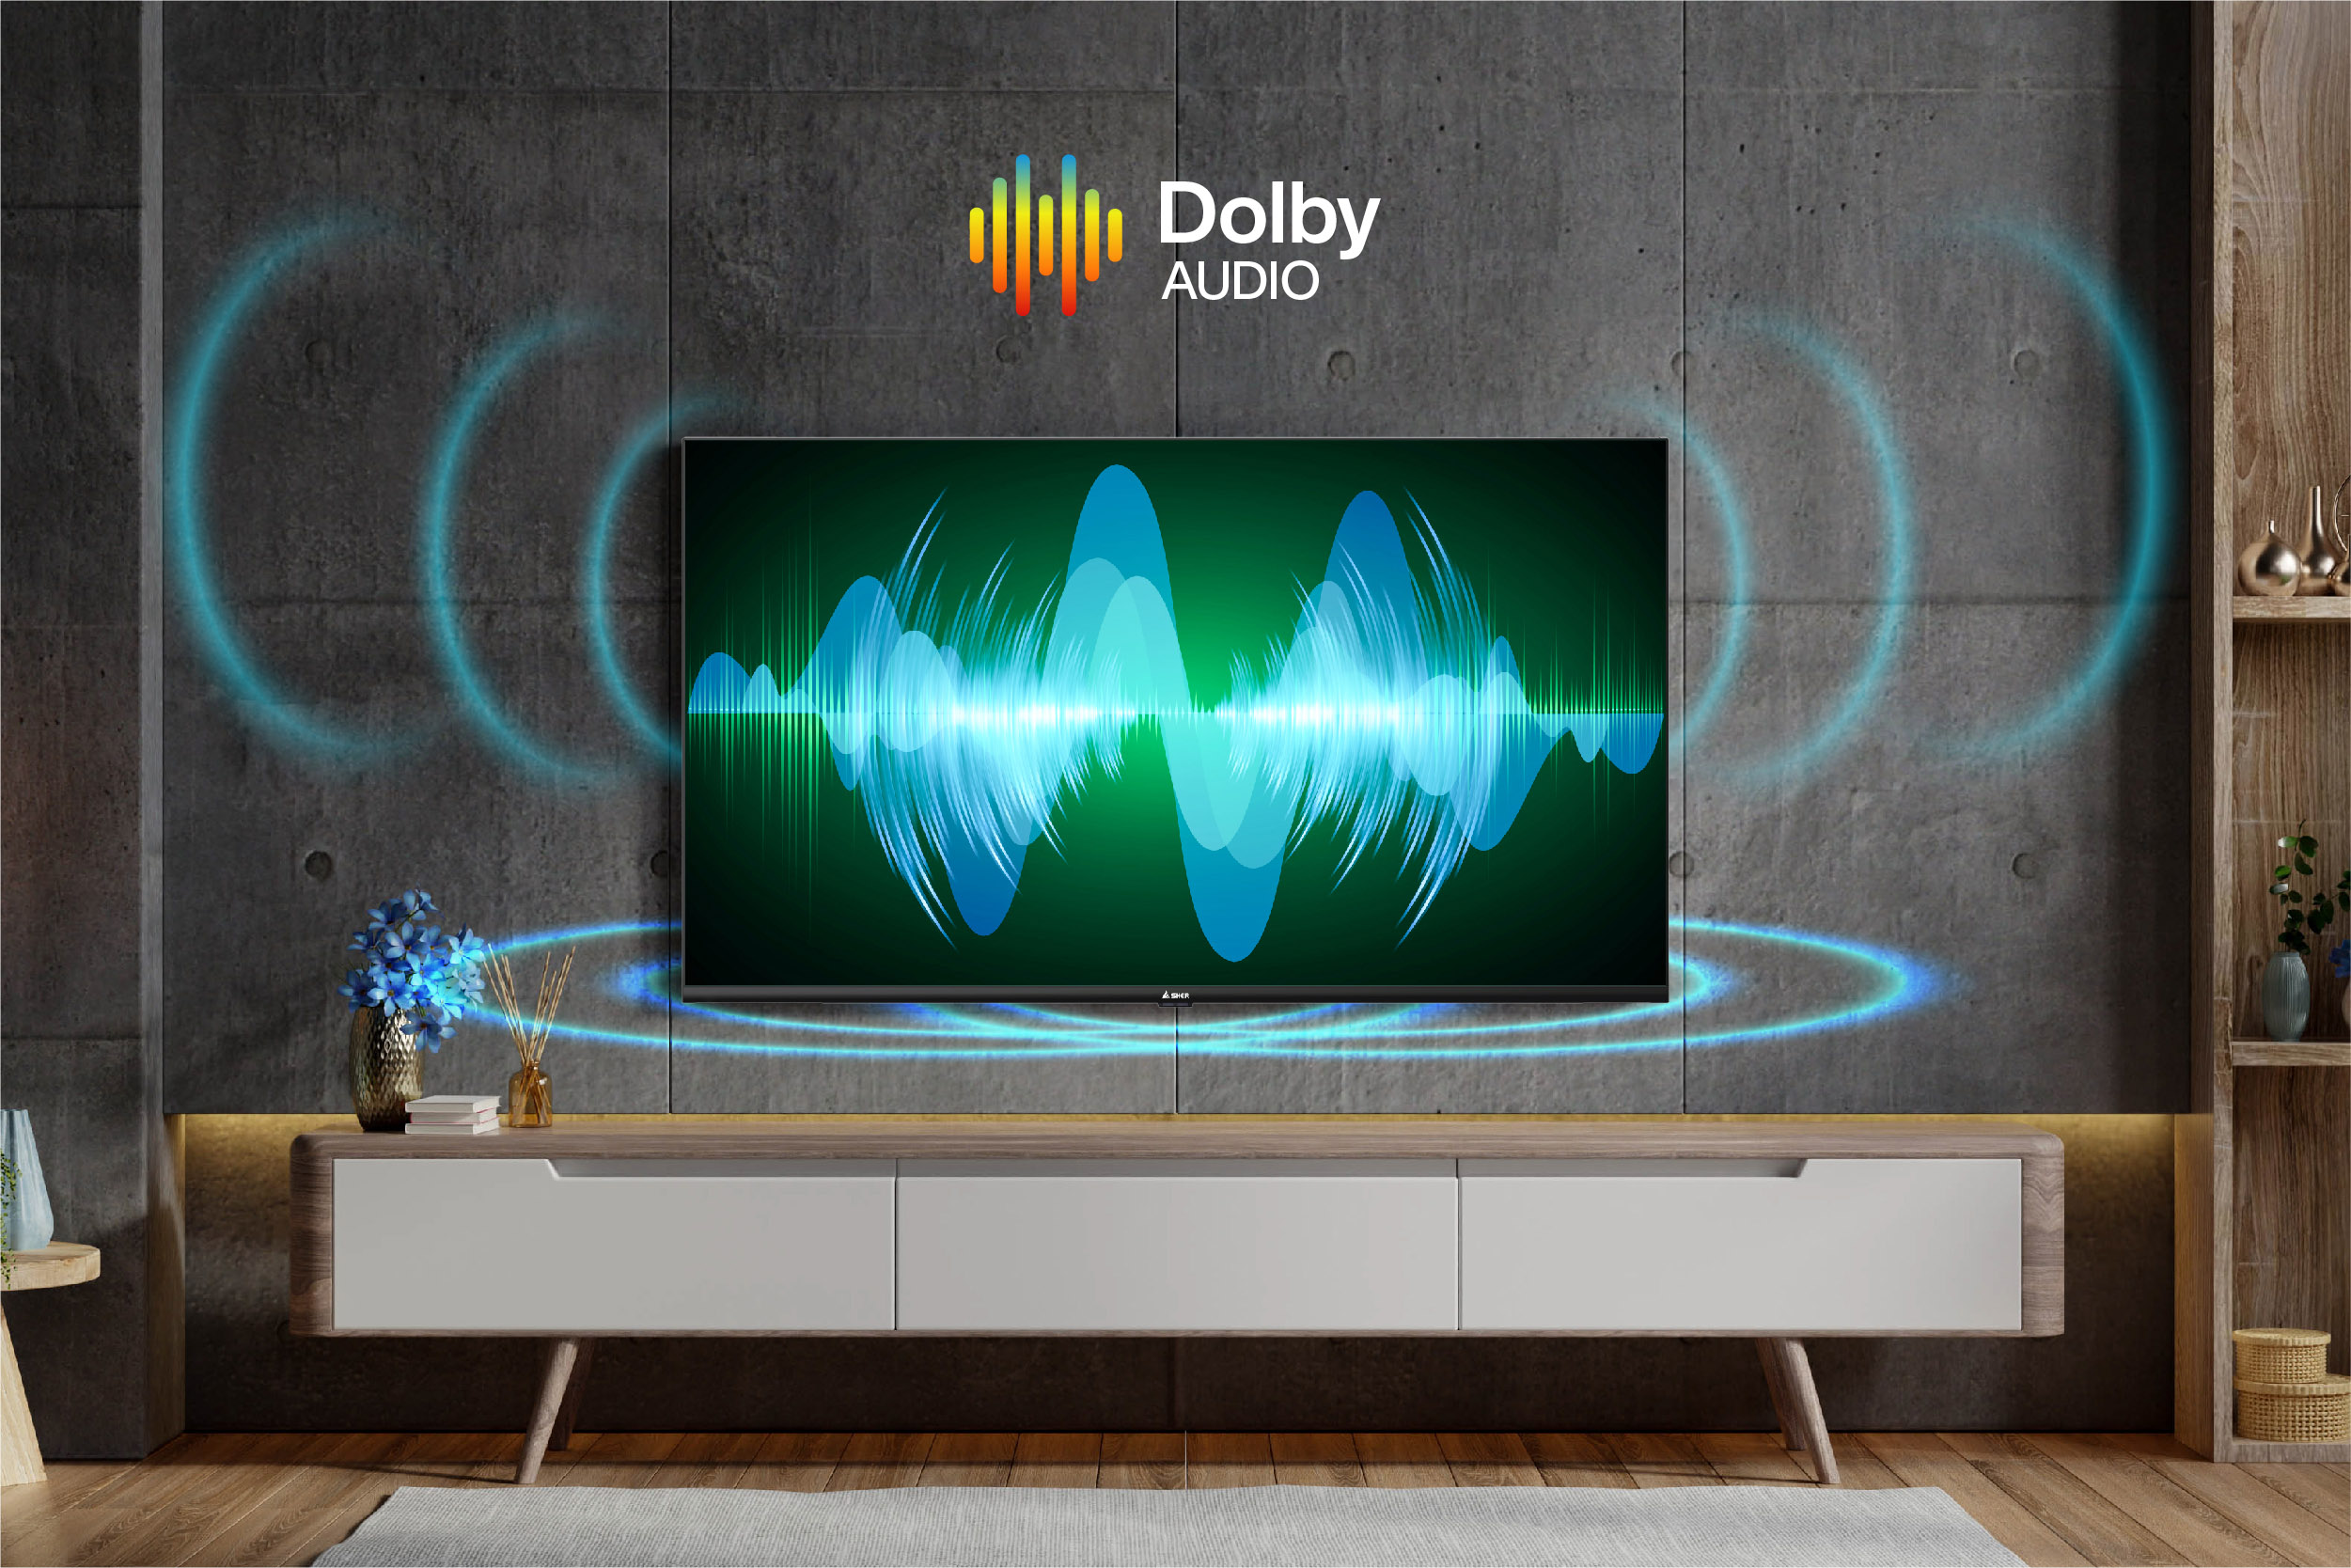 Tivi A-43GF6900 sử dụng công nghệ âm thanh Dolby Audio